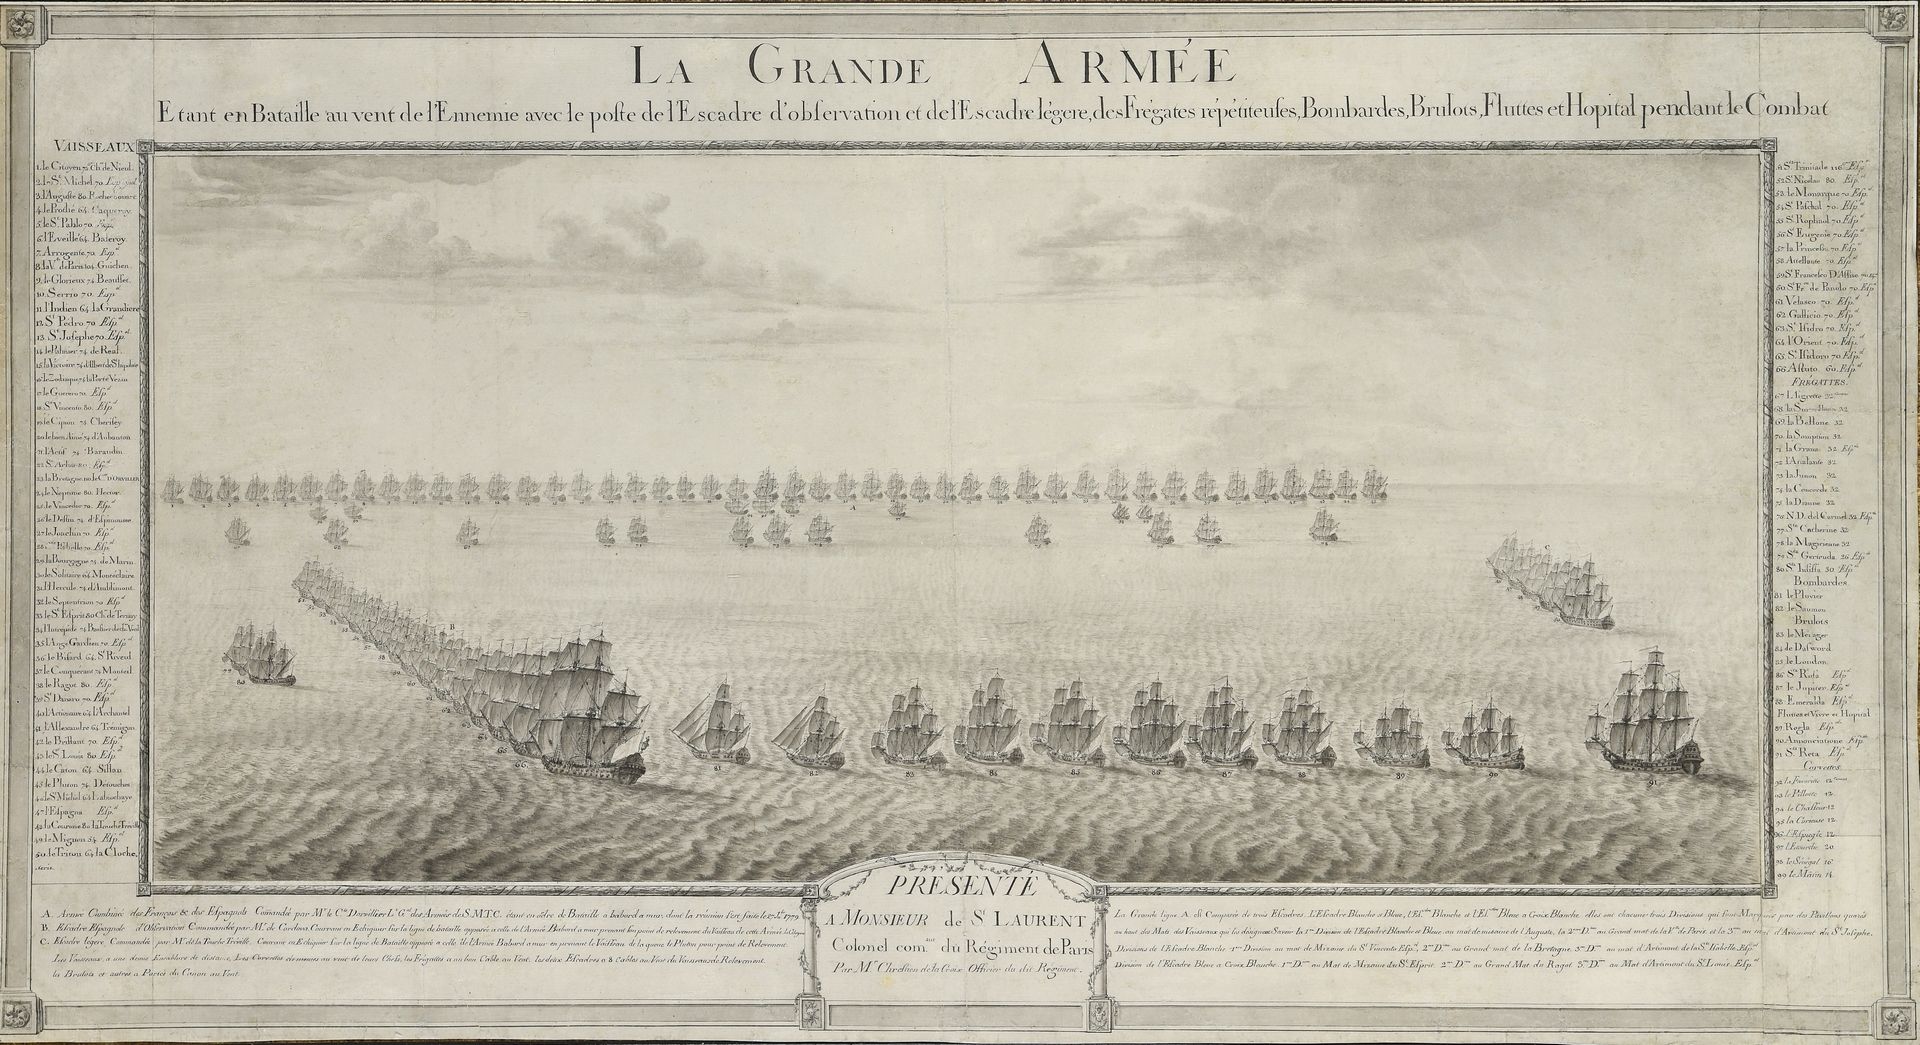 Null Chrestien de LA CROIX (Conte)
Ufficiale dal 1753 al 1787

"La Grande Armata&hellip;